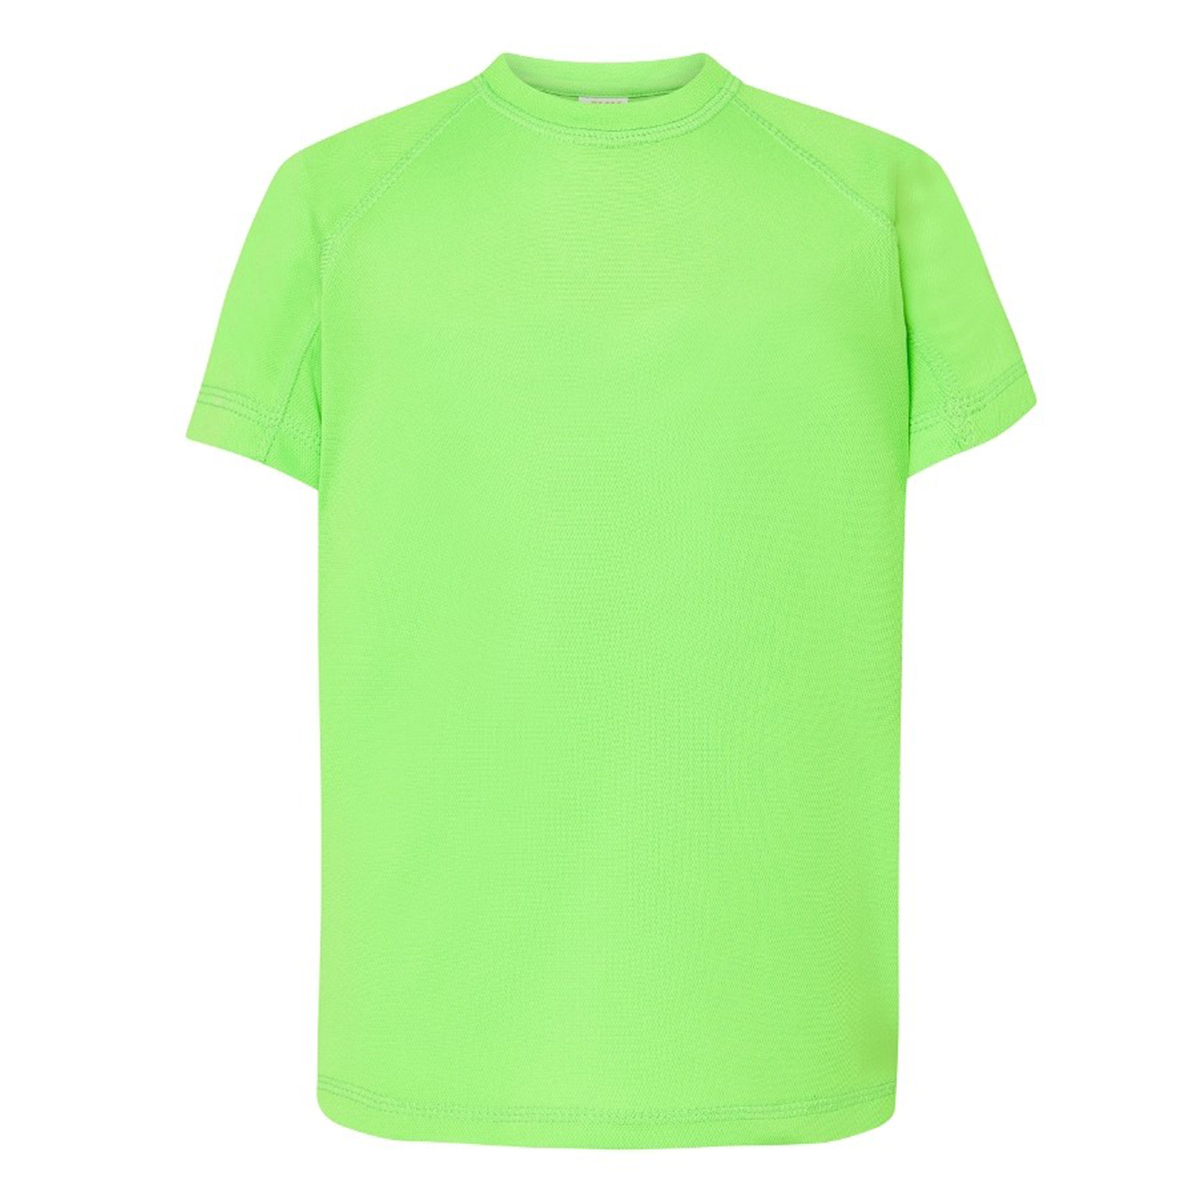 Koszulka szybkoschnąca dziecięca / młodzieżowa SPORT JHK limonkowa fluorescencyjna